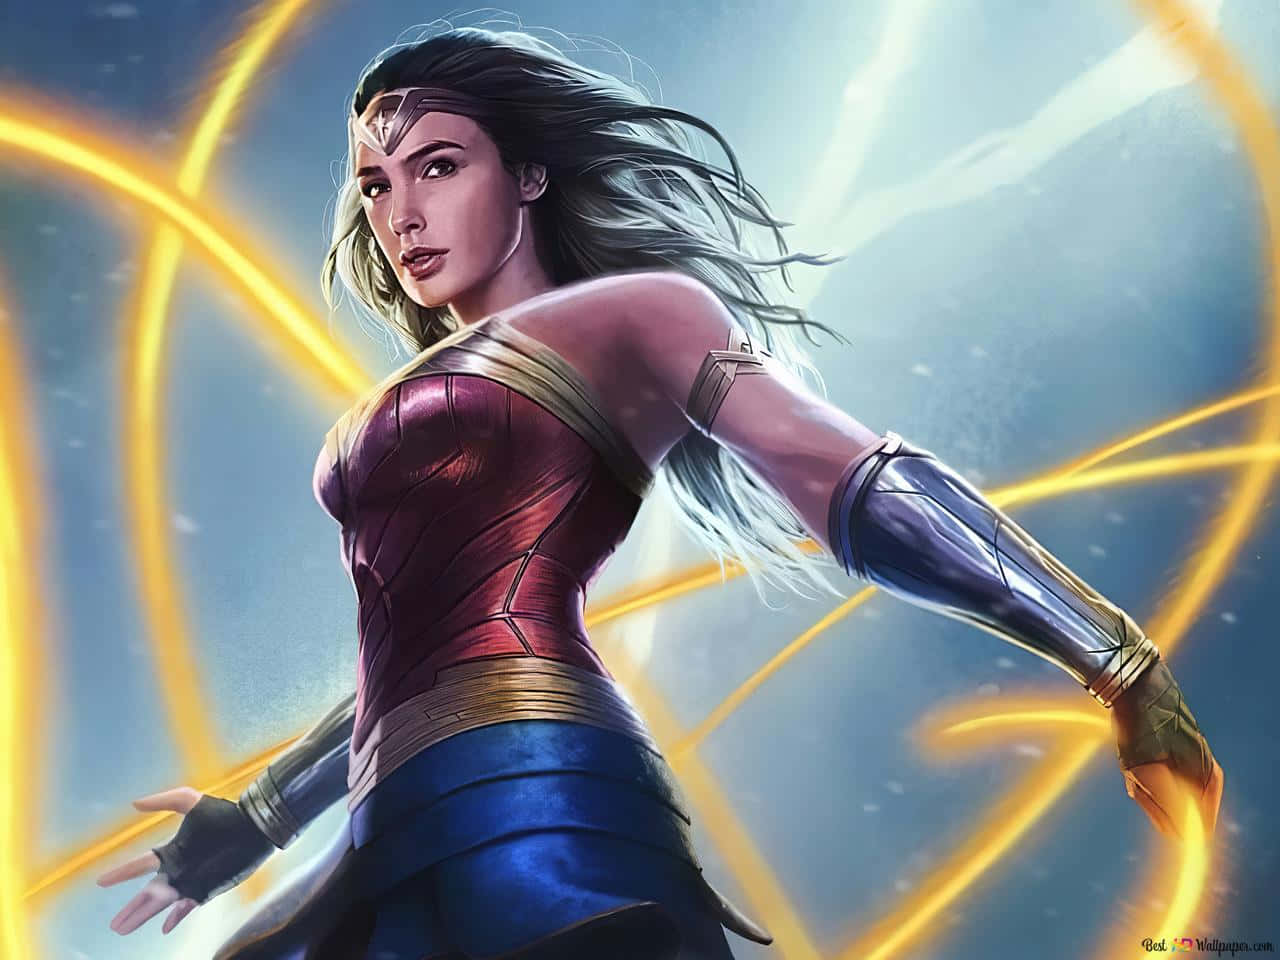 Dianaprince, Alias Wonder Woman, È Pronta Per L'azione.